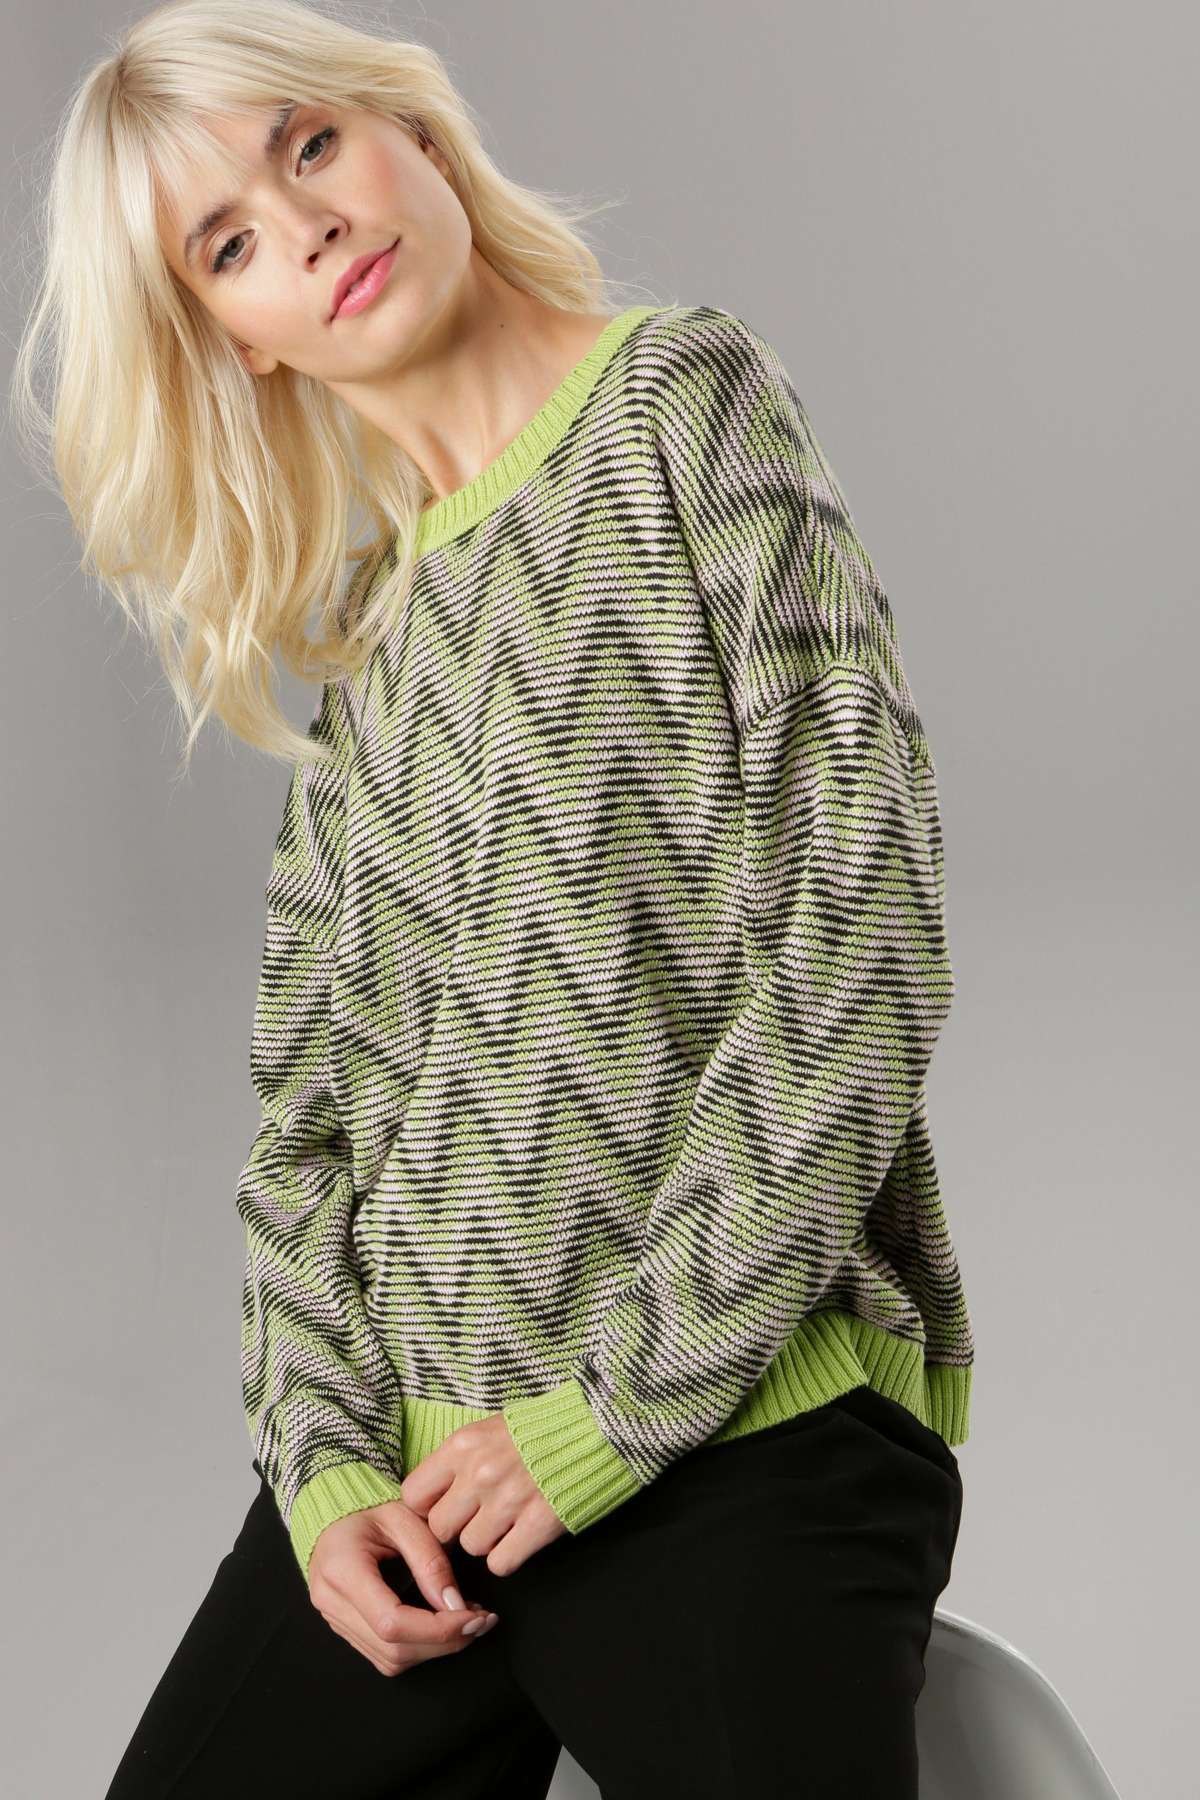 Вязаный свитер с зигзагообразным узором в стиле ретро в свежих тонах.